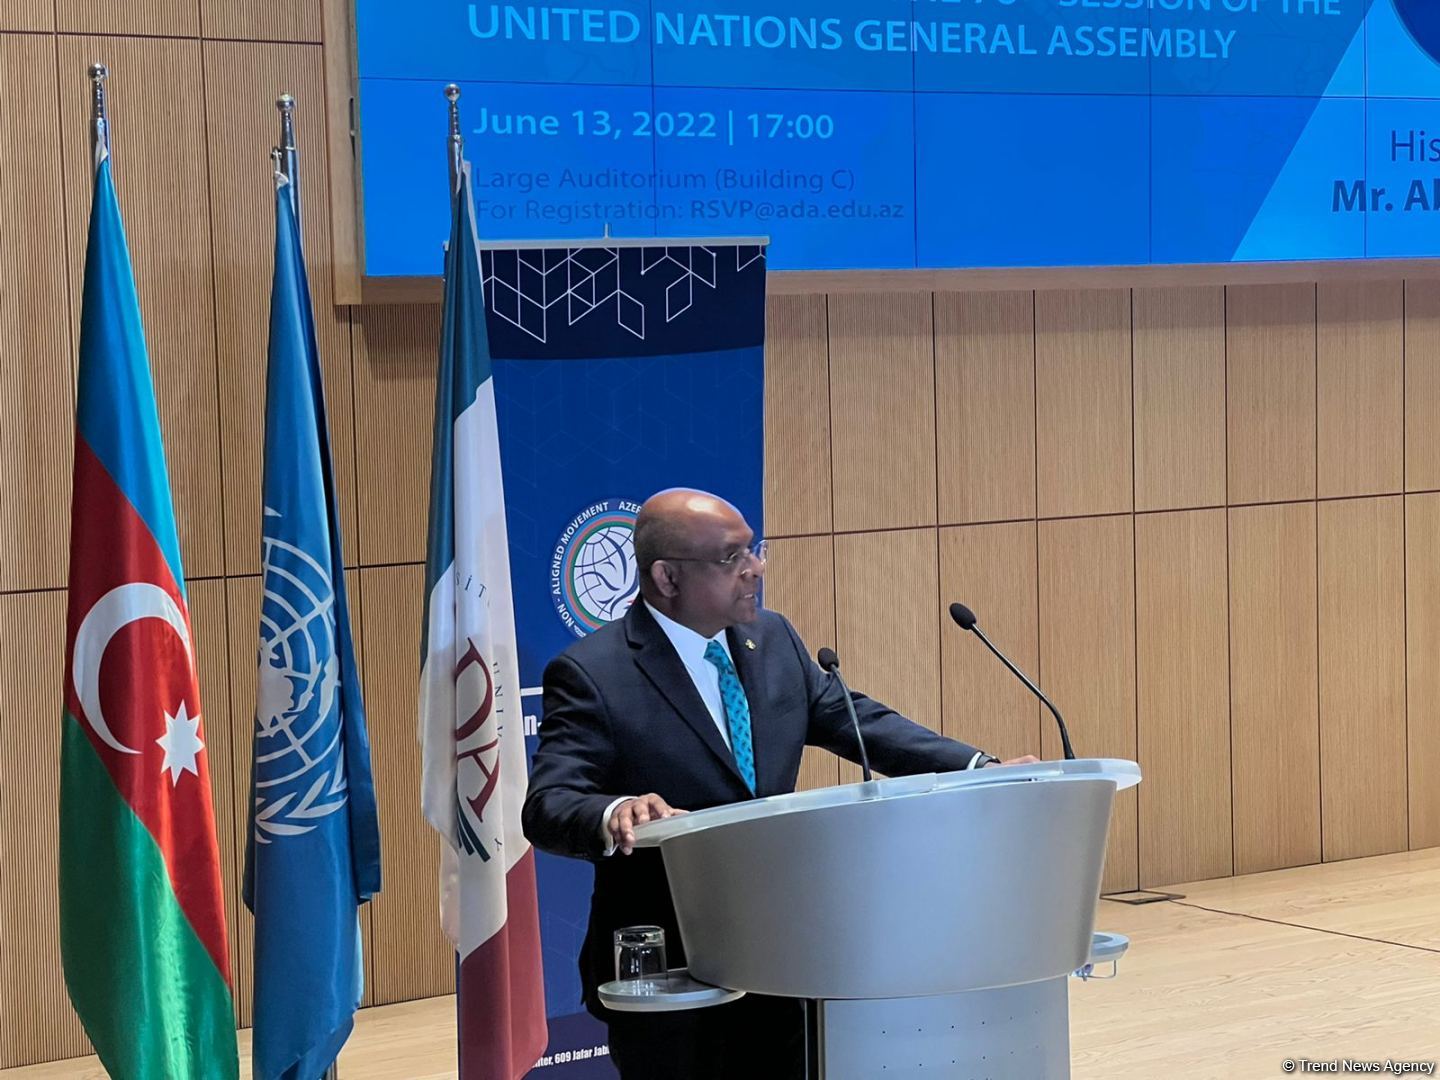 ООН открыта к сотрудничеству с молодежью в рамках Движения неприсоединения -  председатель Генассамблеи ООН